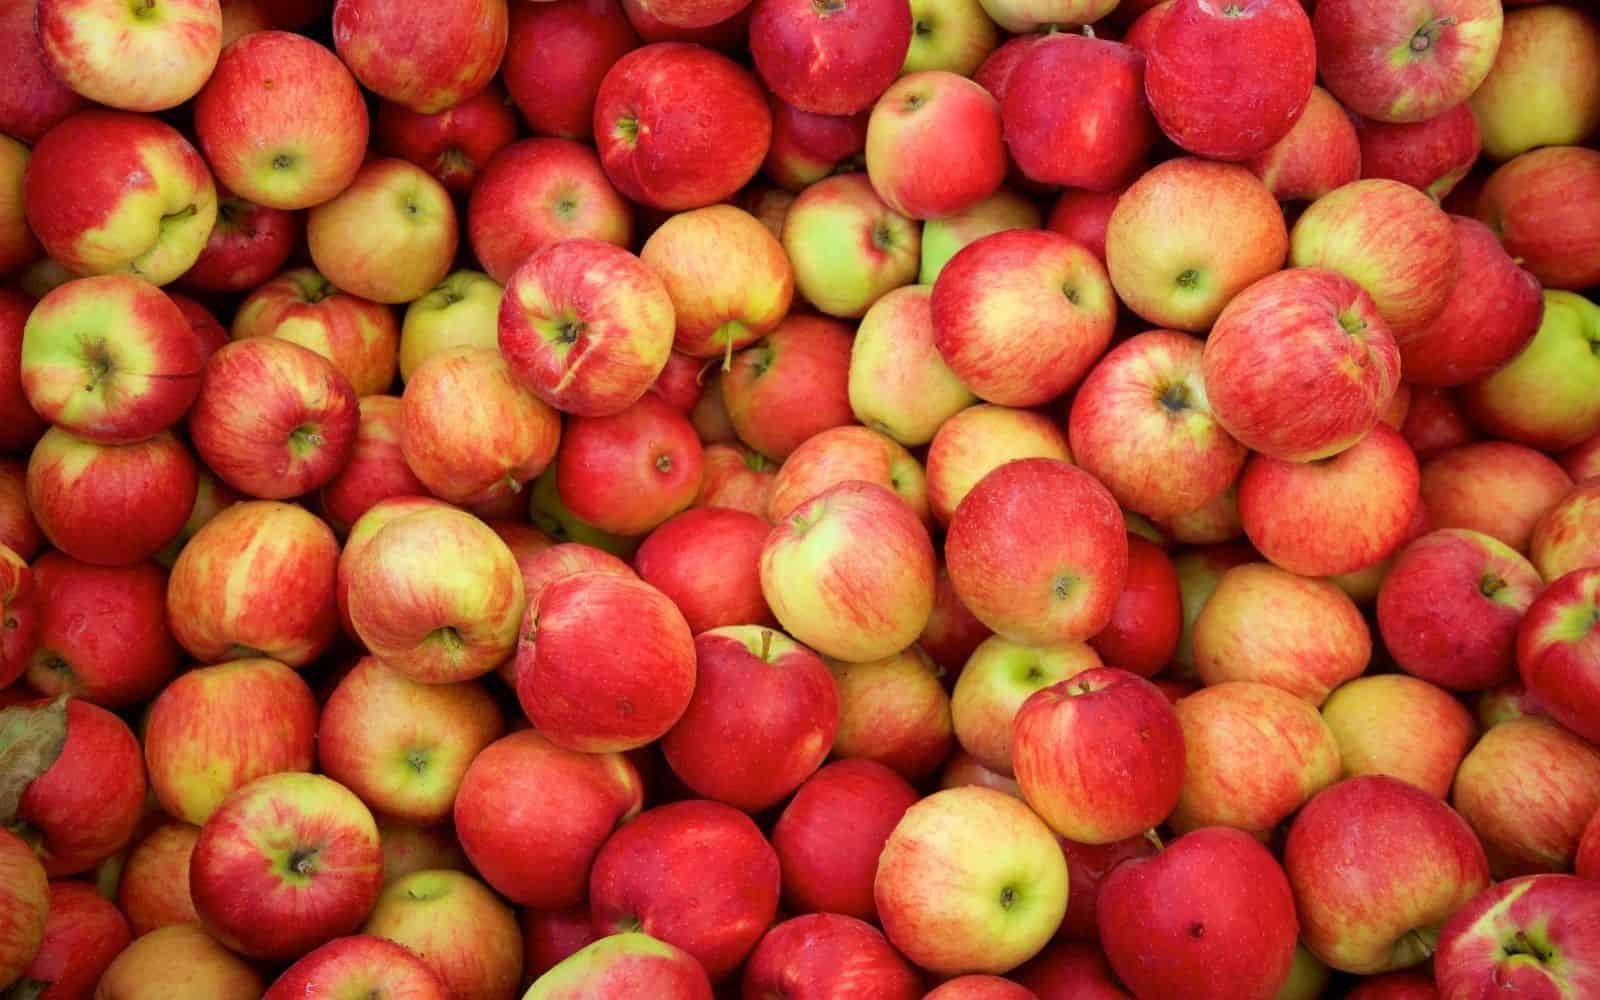 Jonagold apples for sale